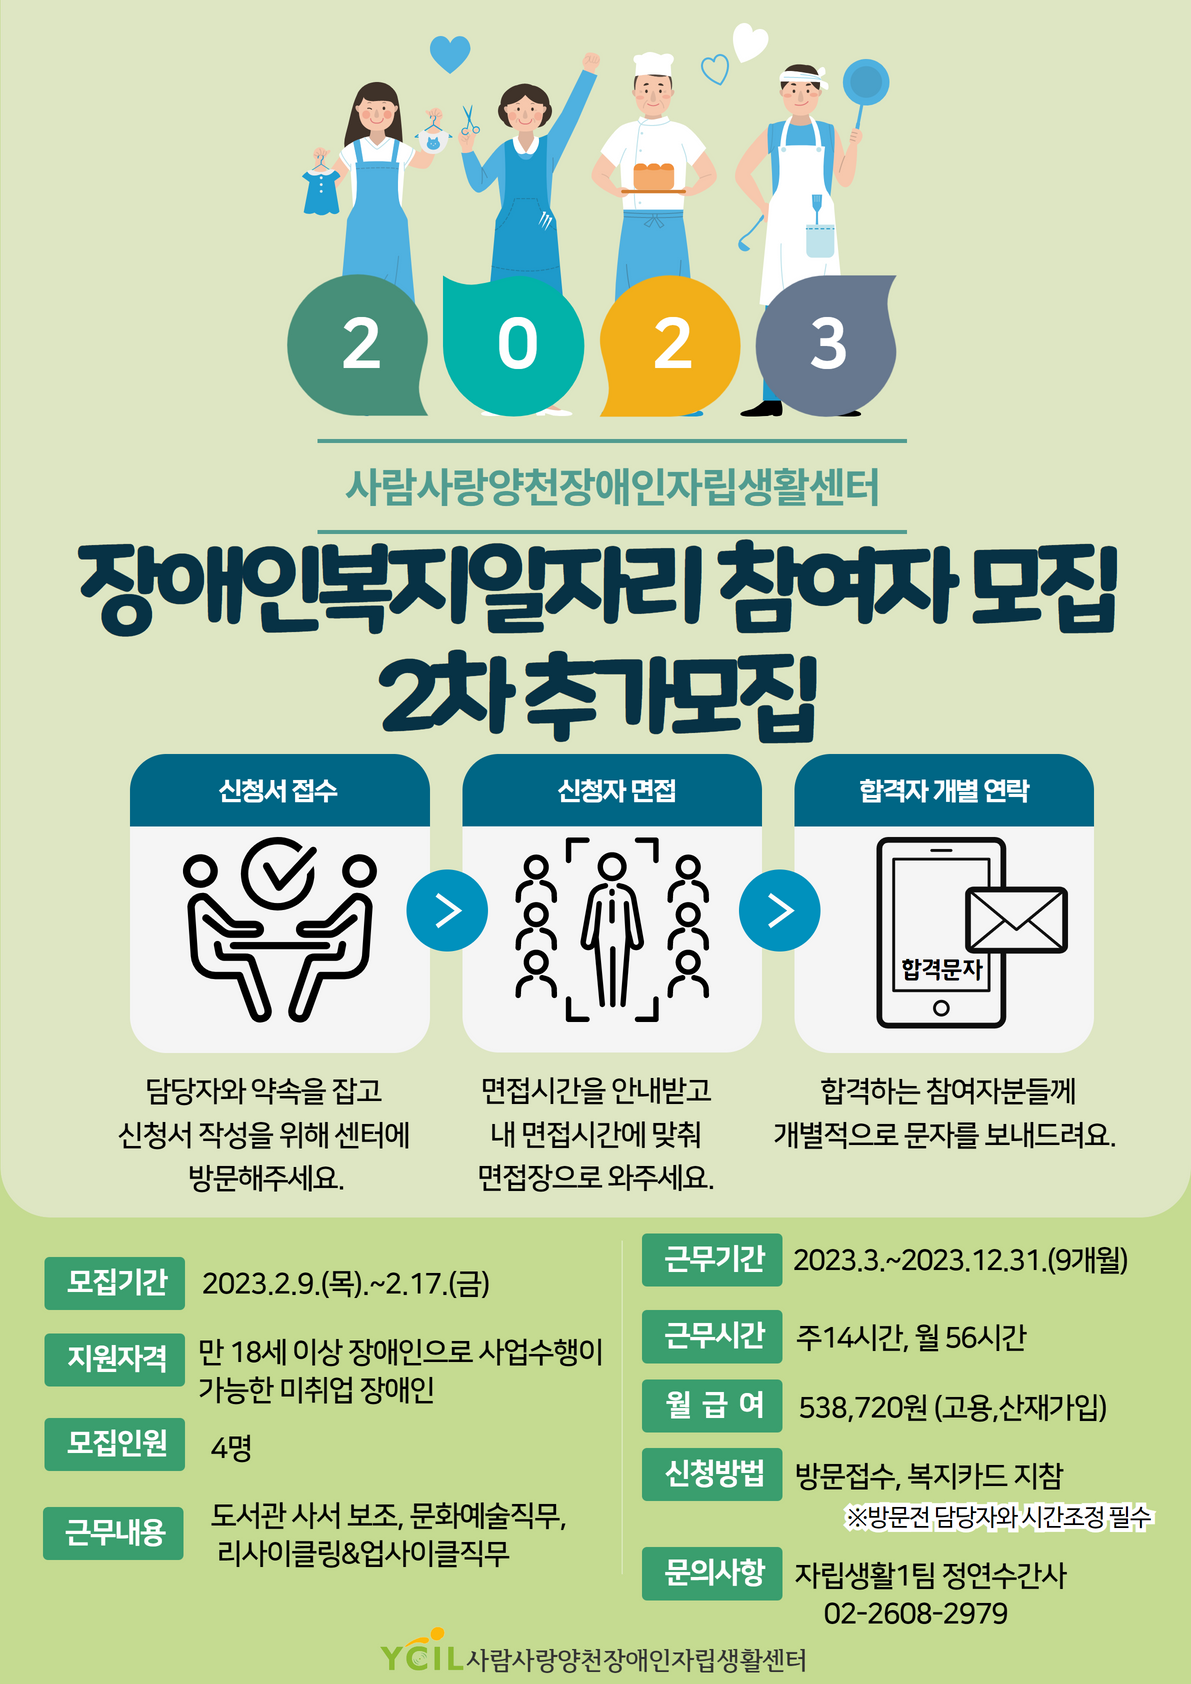 [복사본] 2023년 장애인복지일자리 2차 참여자 모집 _연장공고.png